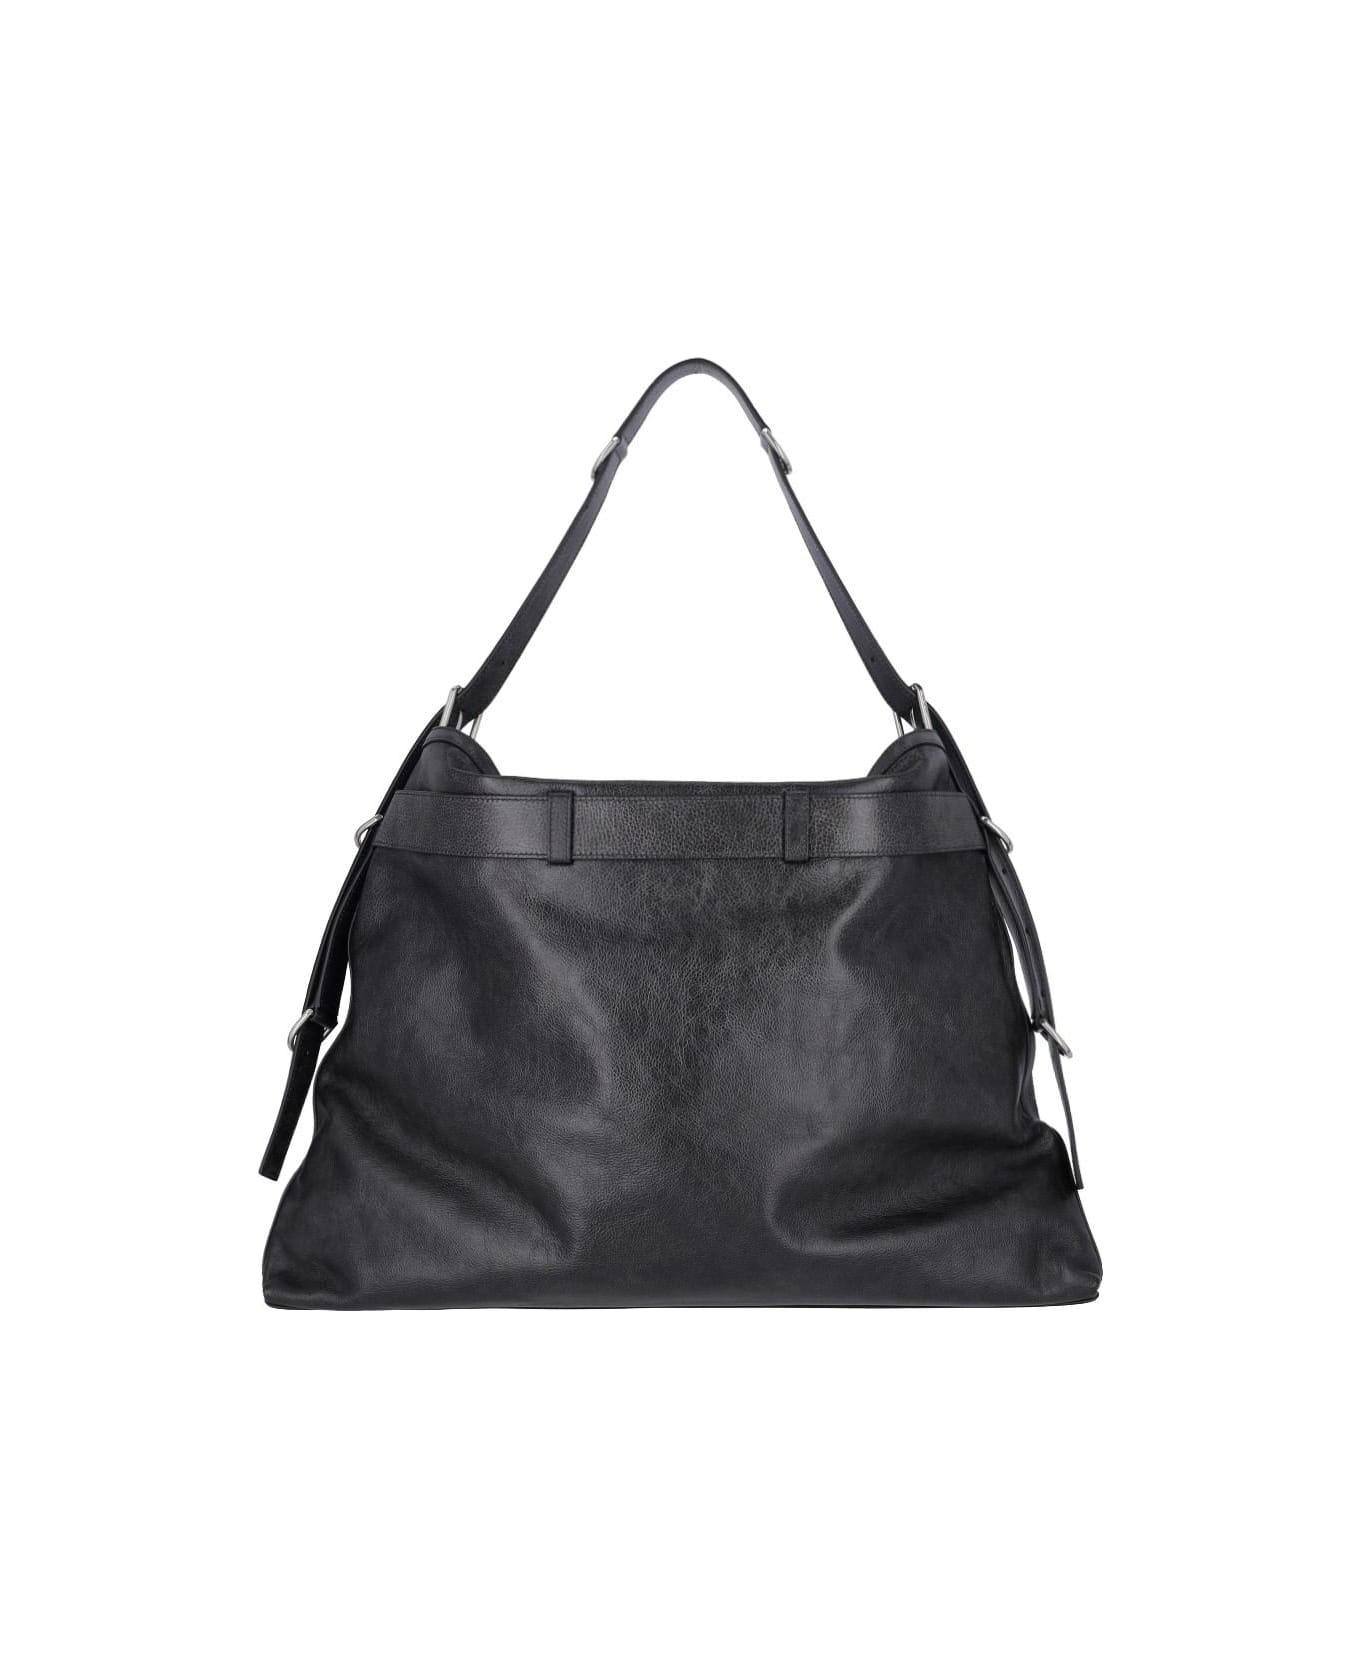 Givenchy 'voyou Boyfriend' Large Shoulder Bag - BLACK